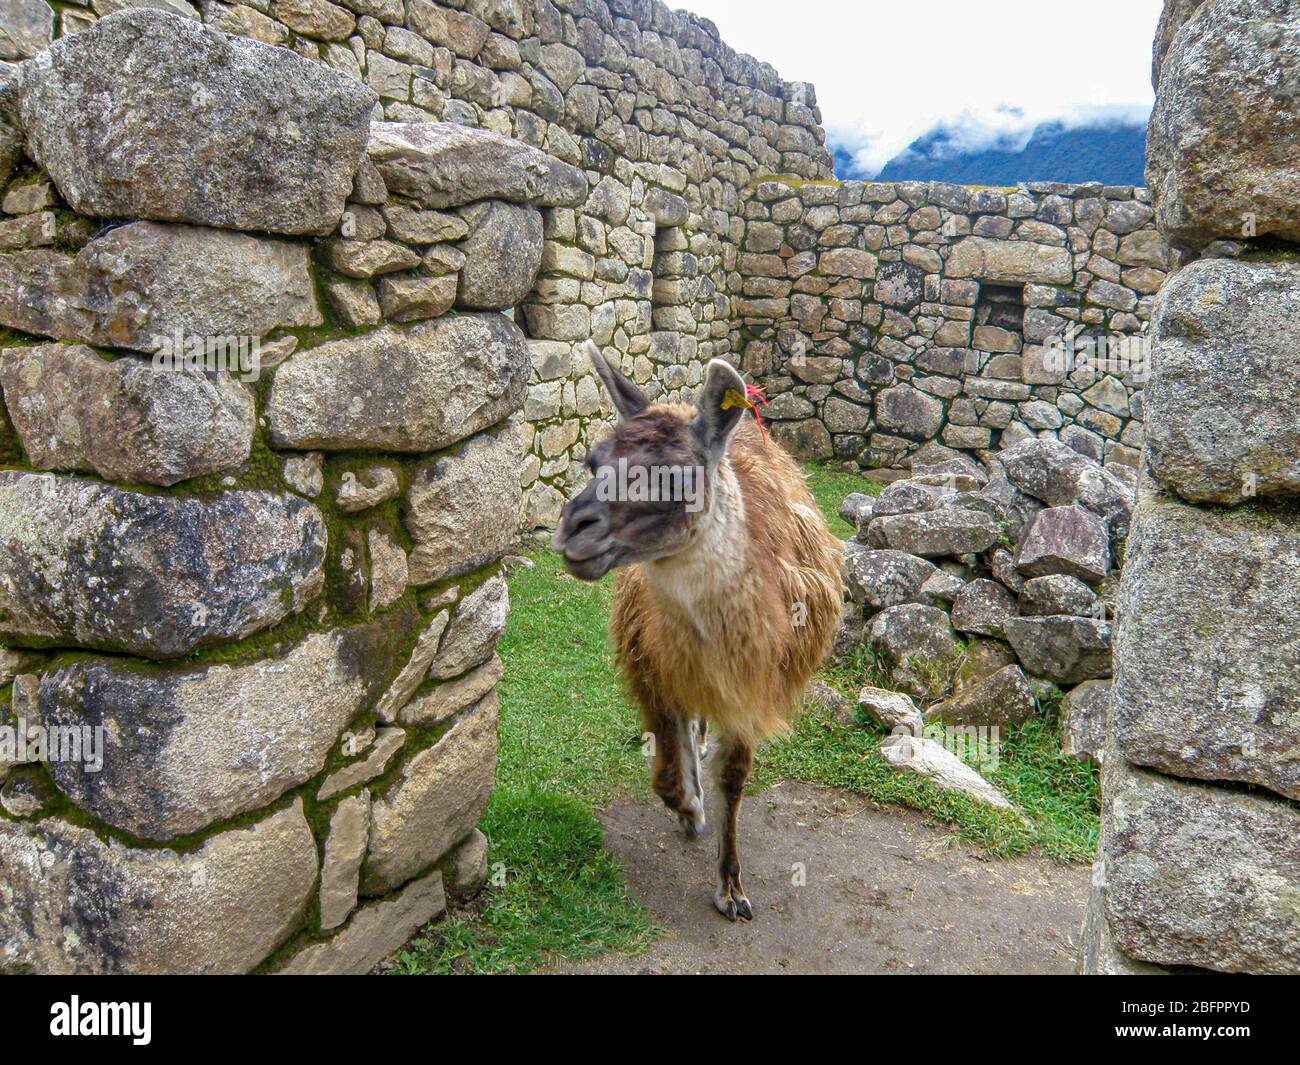 Llama in Machu picchu l Stock Photo